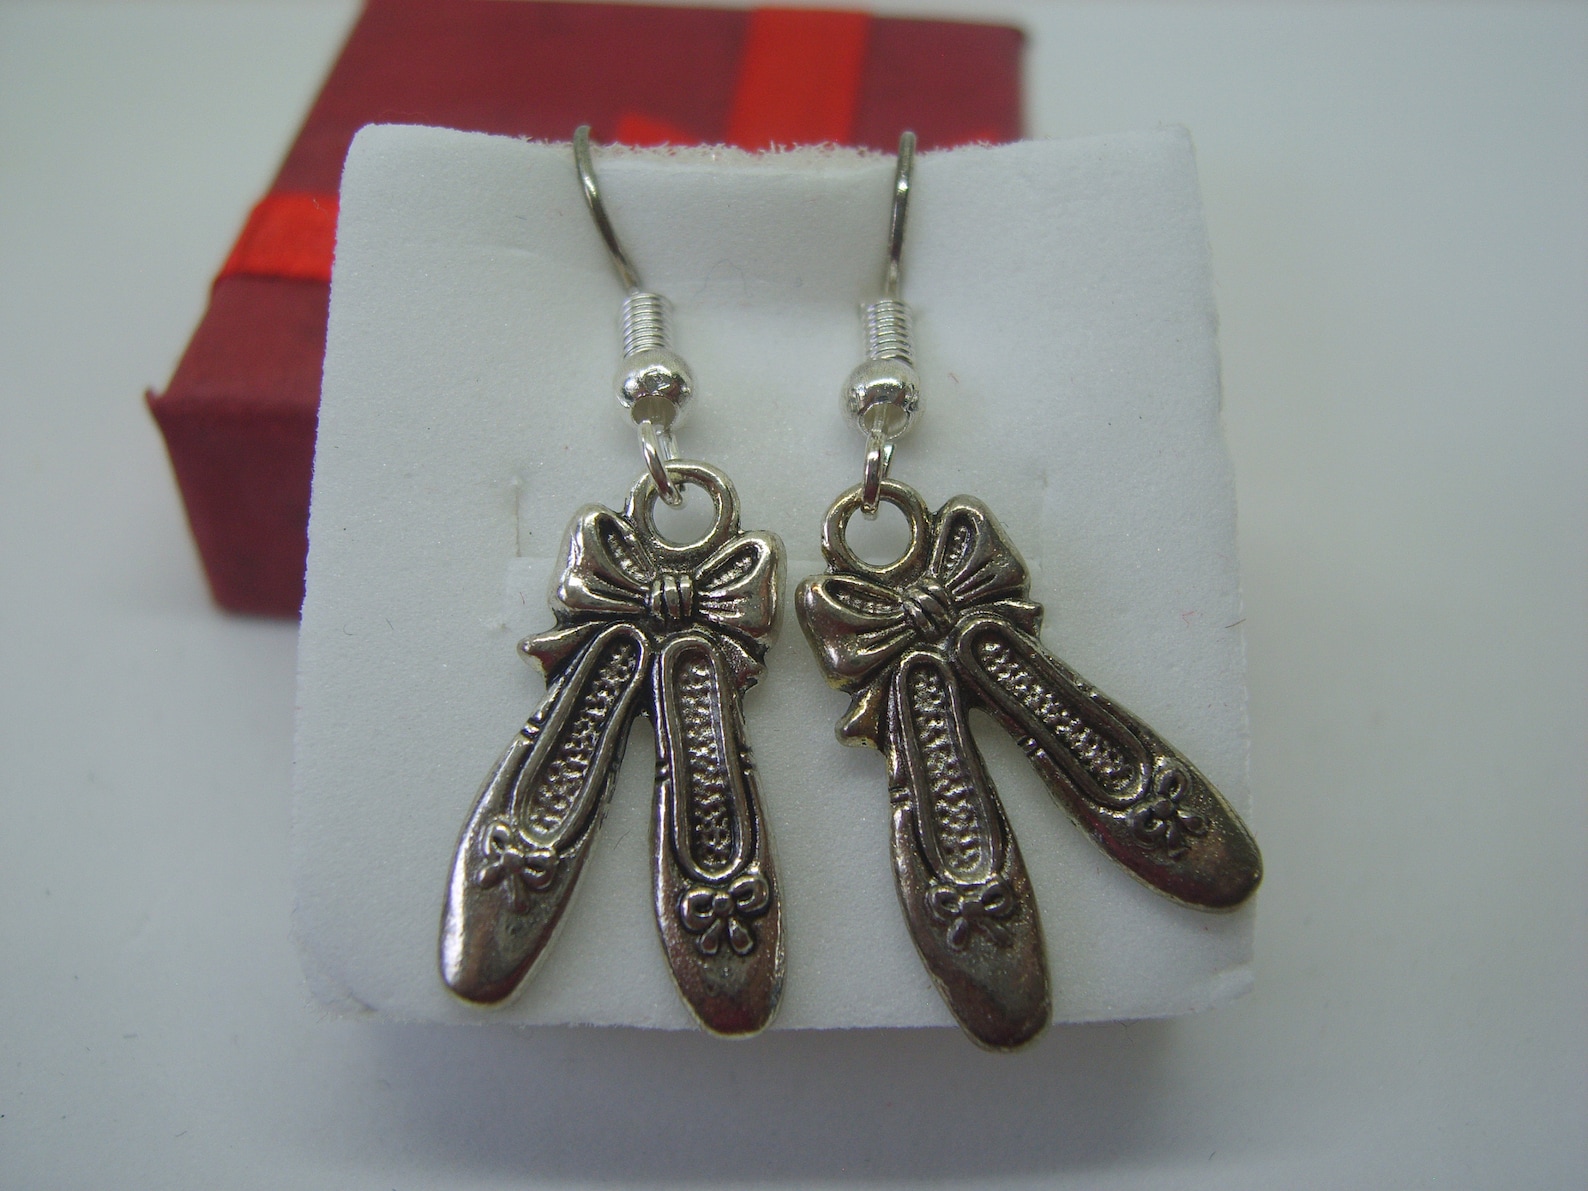 silver plated ballet shoe earrings, ballet shoe earrings, silver plated earrings